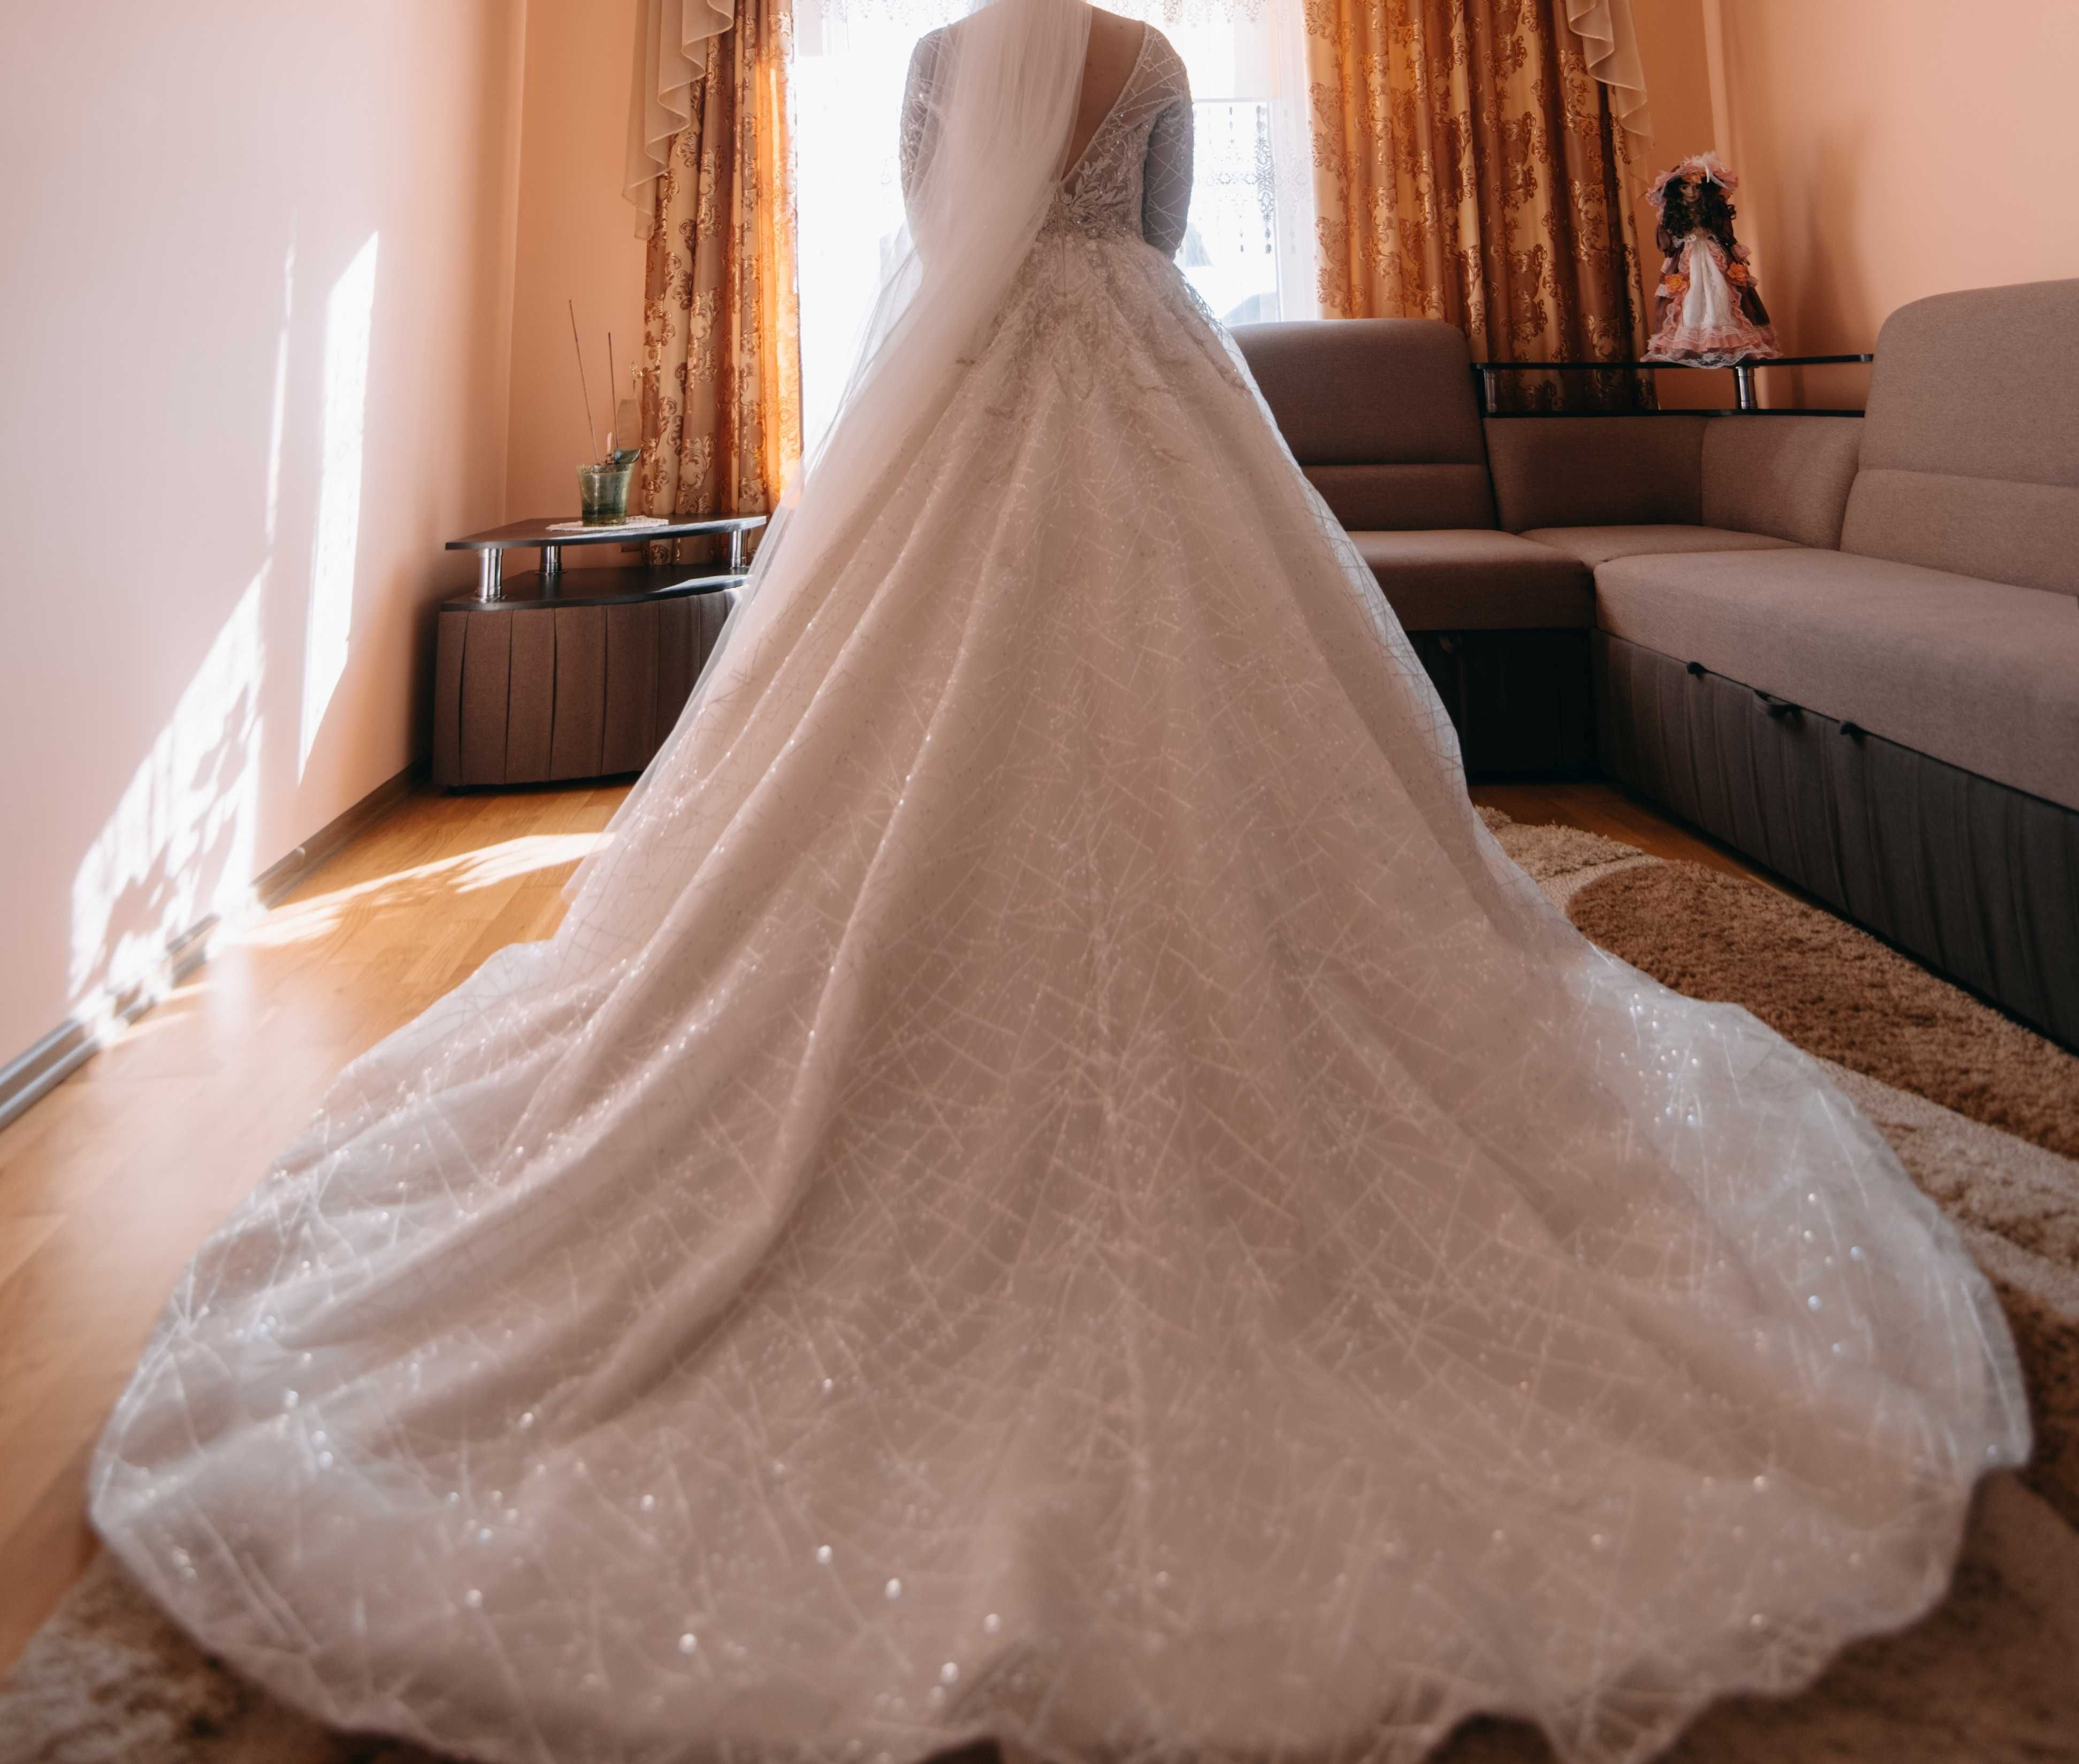 Весільна сукня від Luce Sposa модель Kayley, розмір L/XL